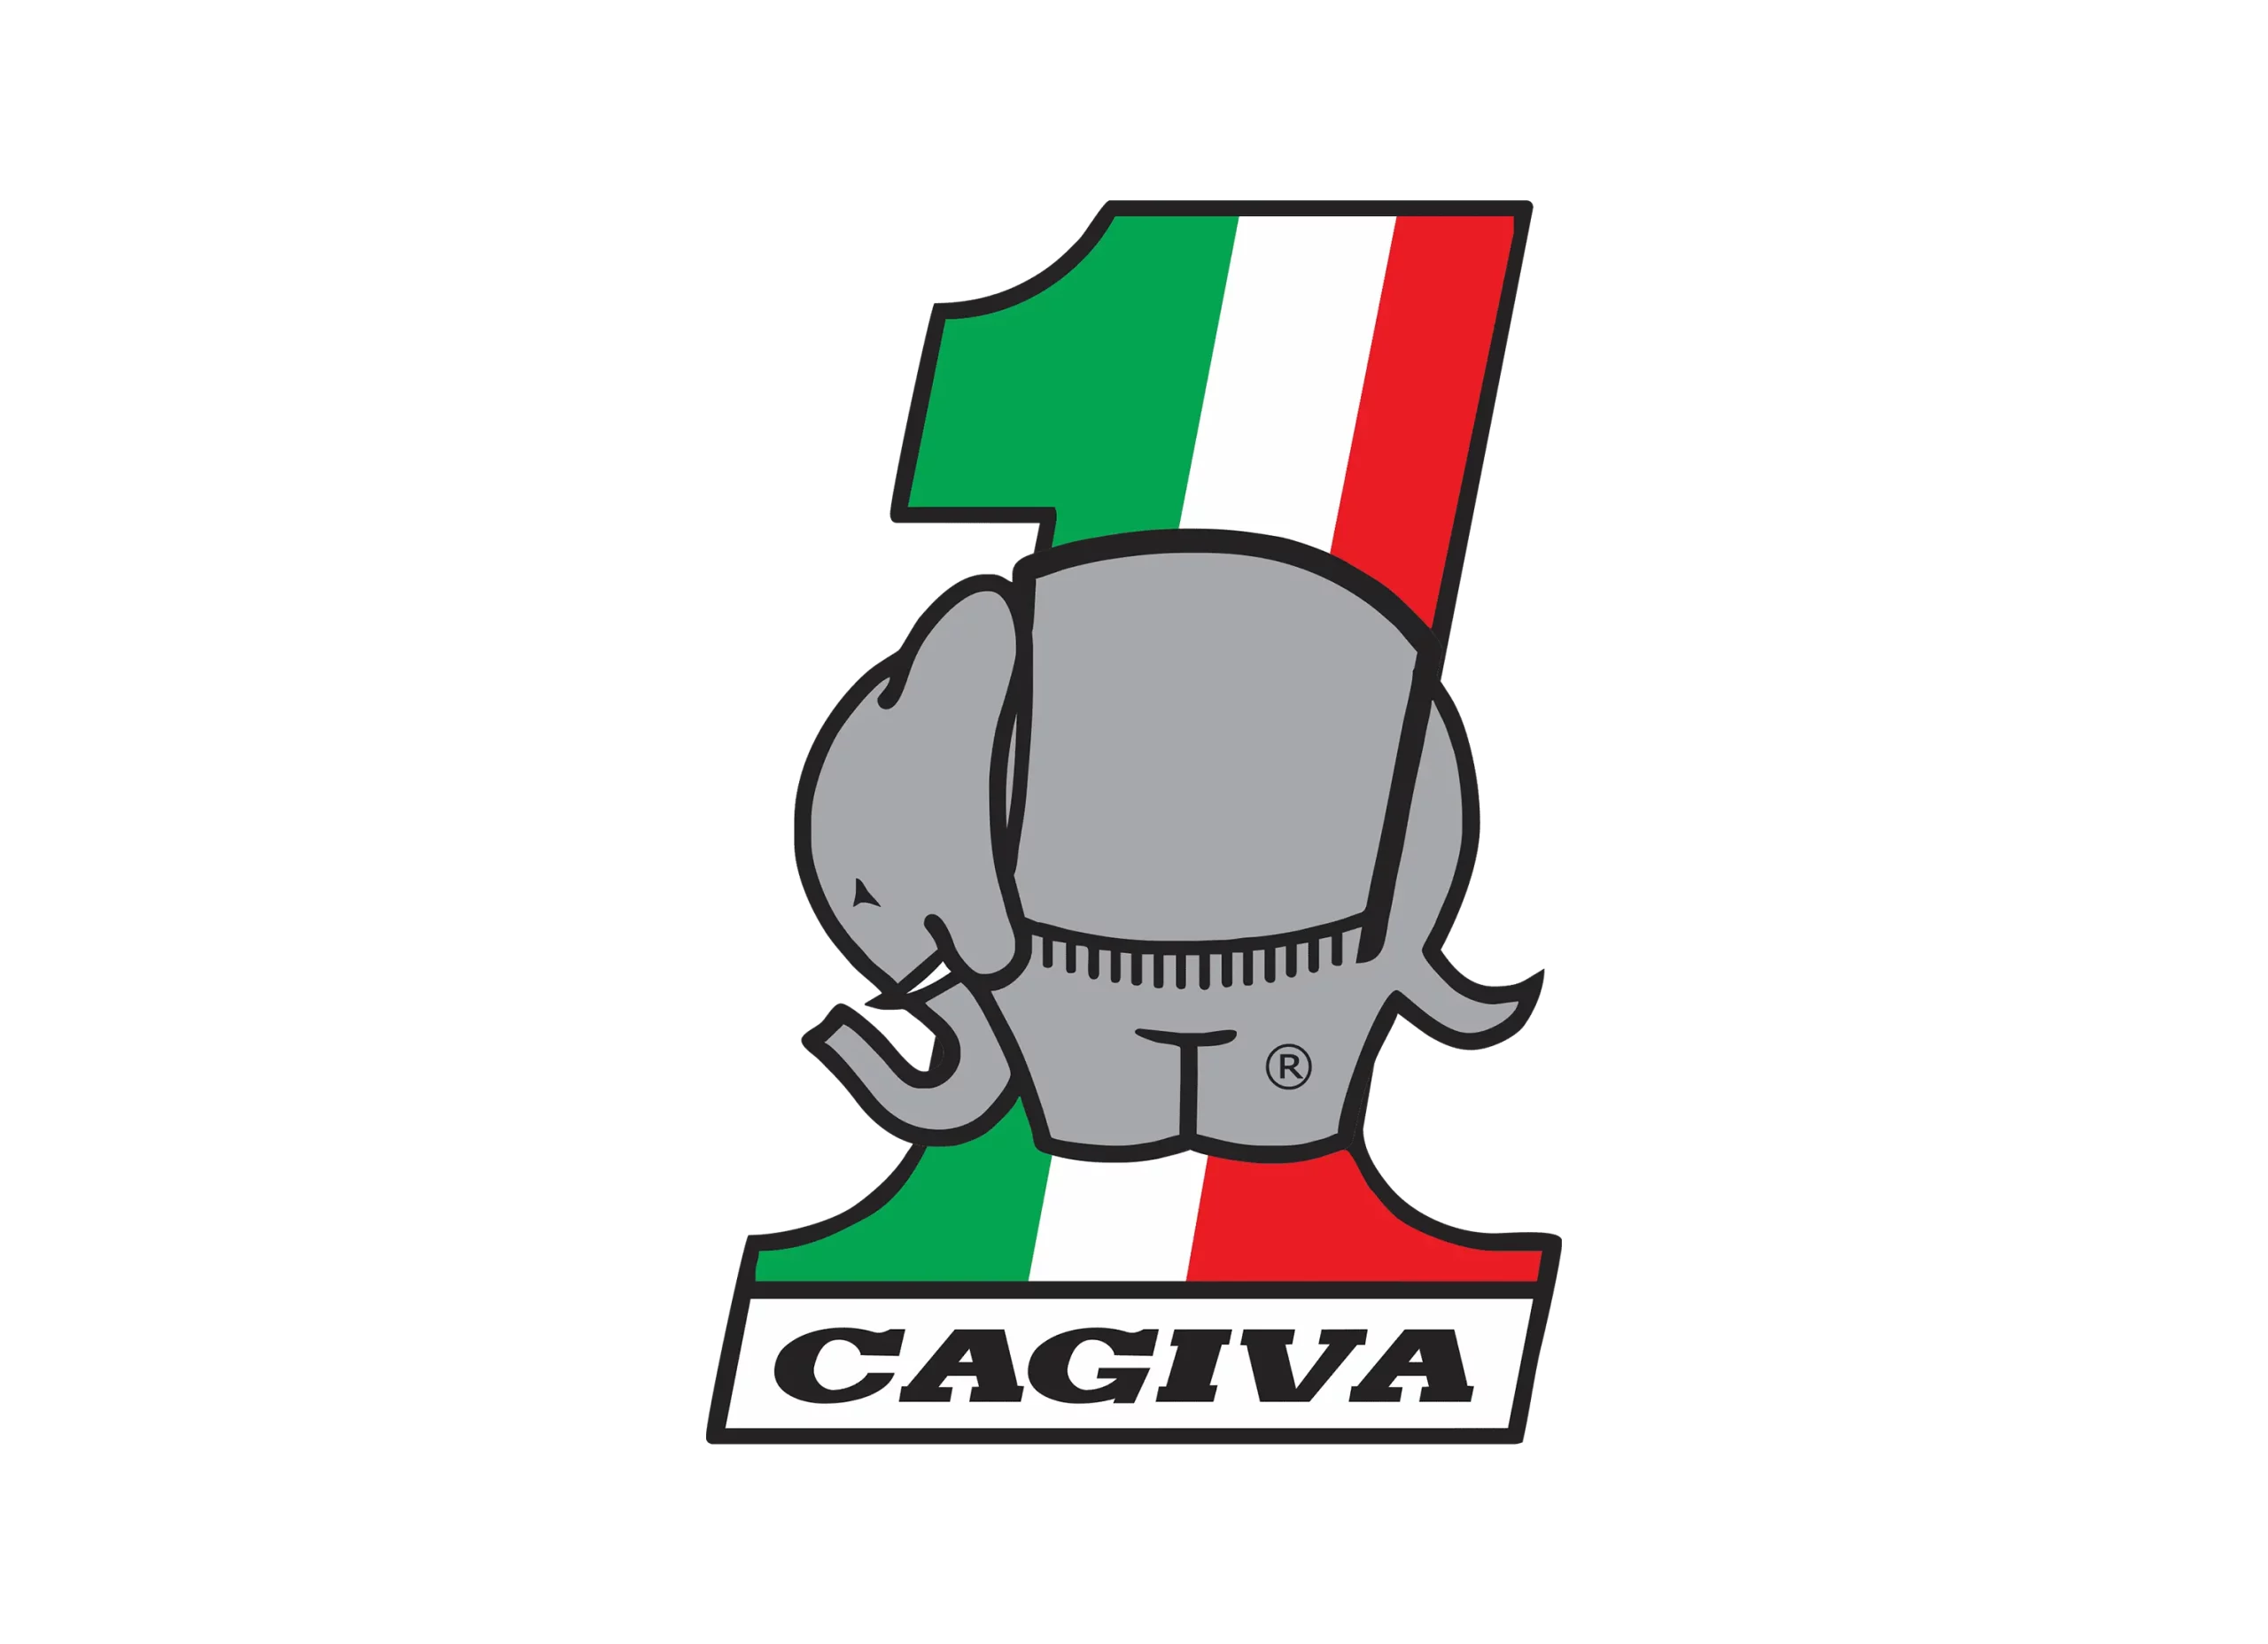 Cagiva logo 1978-1975